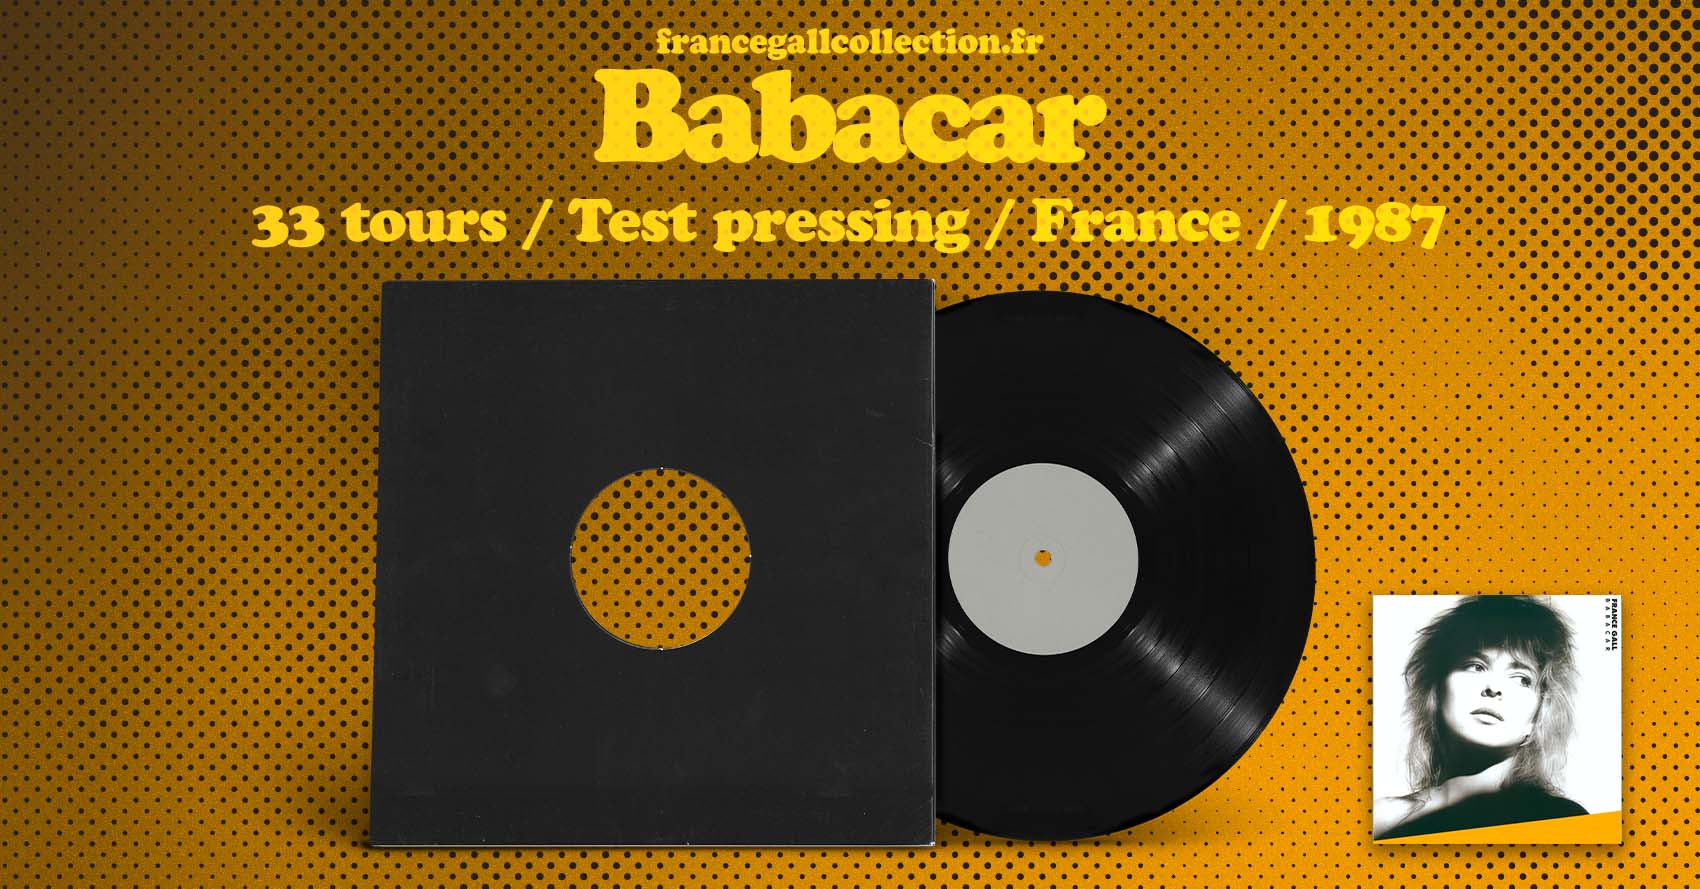 Vinyle 33 tours Test Pressing* (White Label), édité en mars 1987 (avant la sortie de la version commerce), de Babacar, 6ème album studio que Michel Berger a produit pour France Gall le 3 avril 1987.